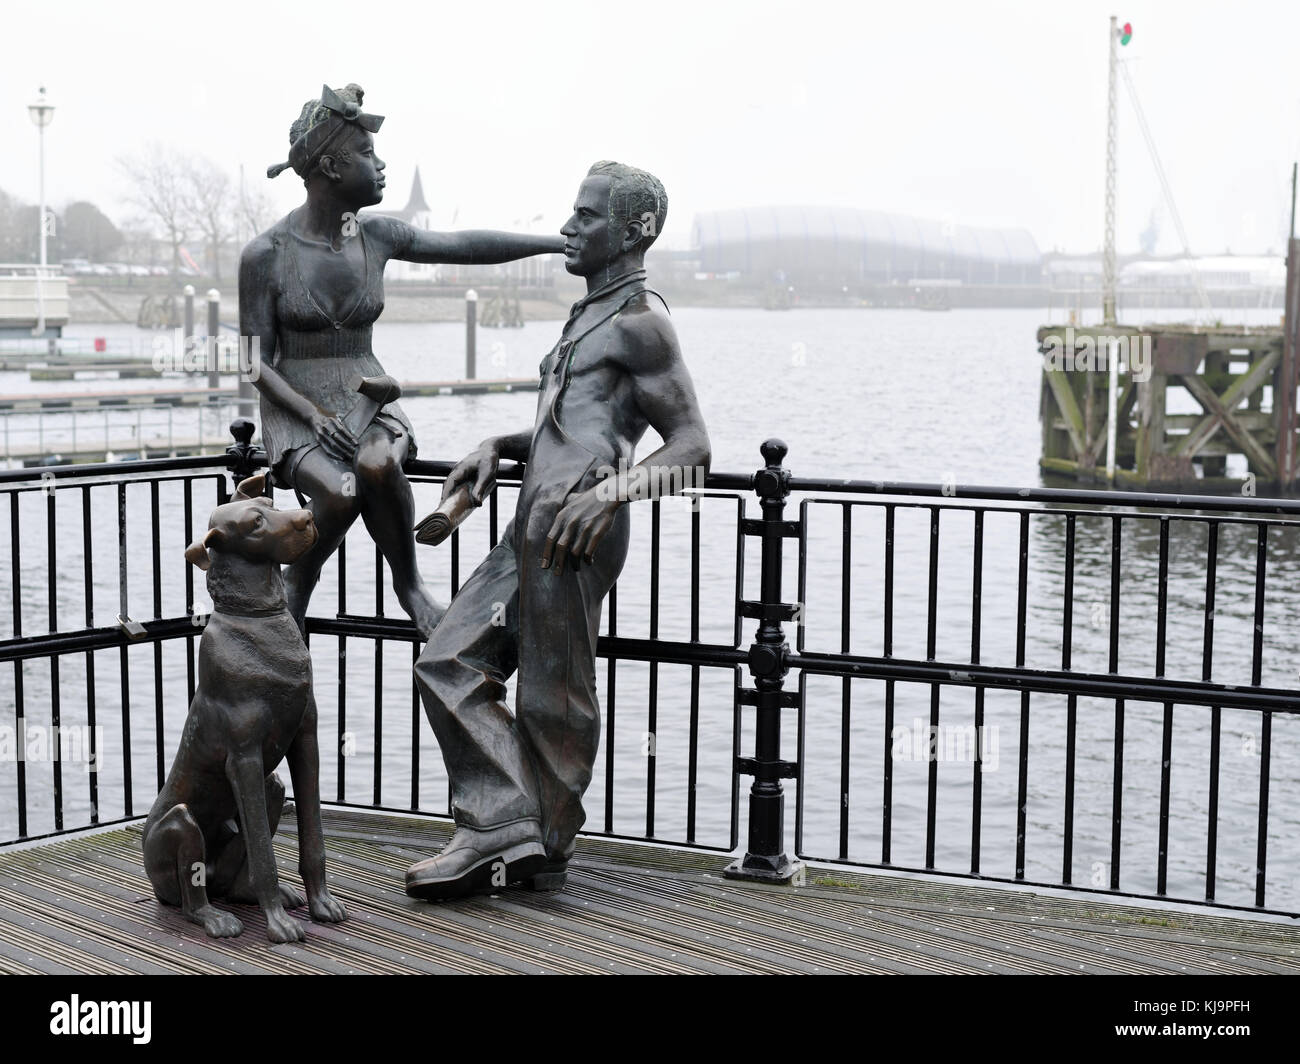 Les gens comme nous, de la sculpture, de la baie de Cardiff, Royaume-Uni Banque D'Images